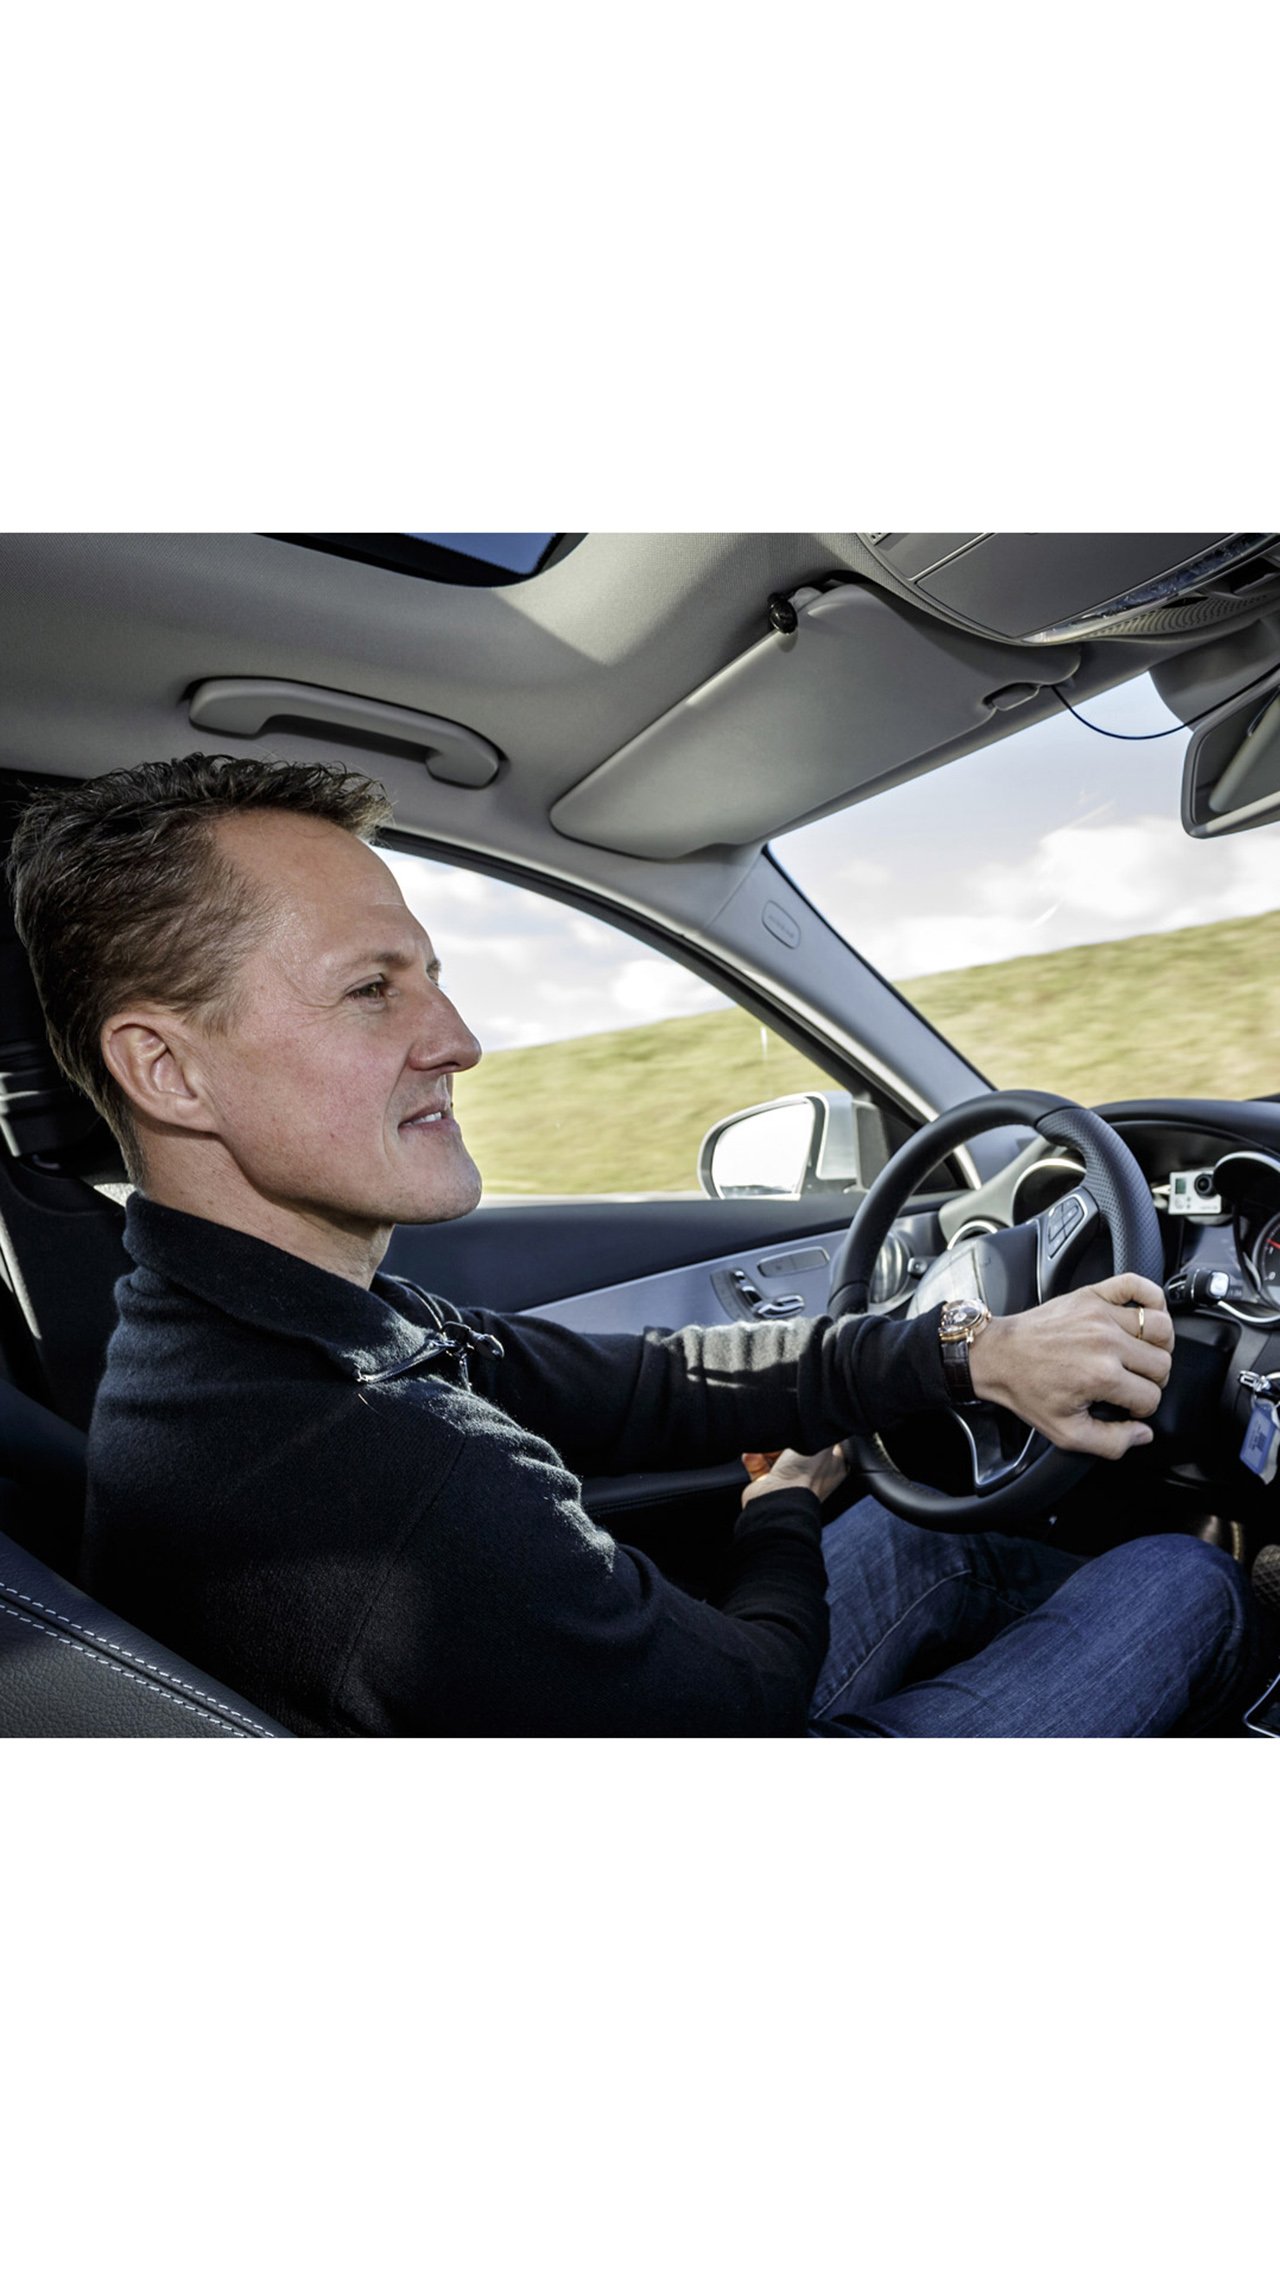 Цена нового автомобиля составляла € 73,4 тыс. В модели Шумахера были установлены дополнительные опции общей стоимостью € 20 тыс. Автомобиль проехал 151 894 км. Новым владельцем стал гражданин Швейцарии.